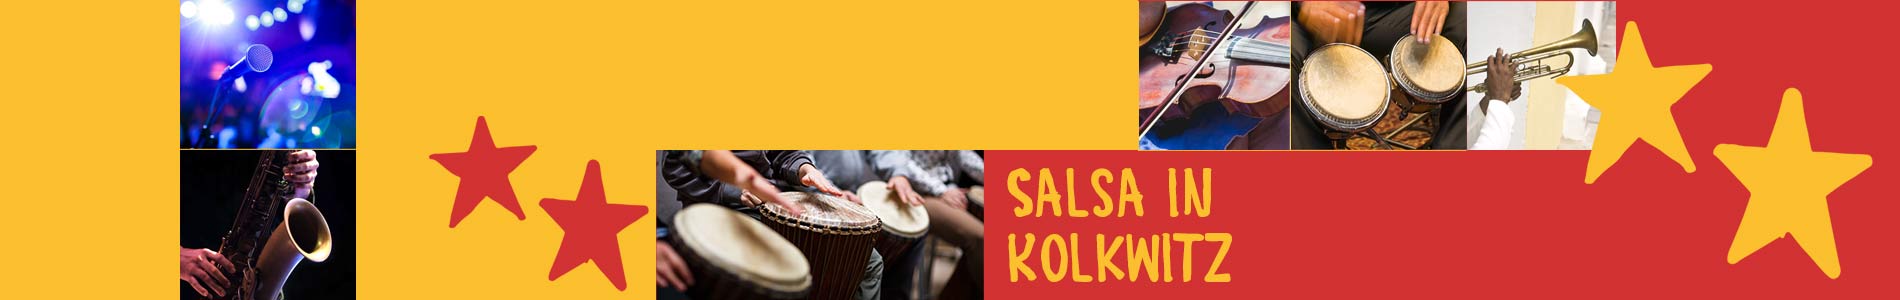 Salsa in Kolkwitz – Salsa lernen und tanzen, Tanzkurse, Partys, Veranstaltungen